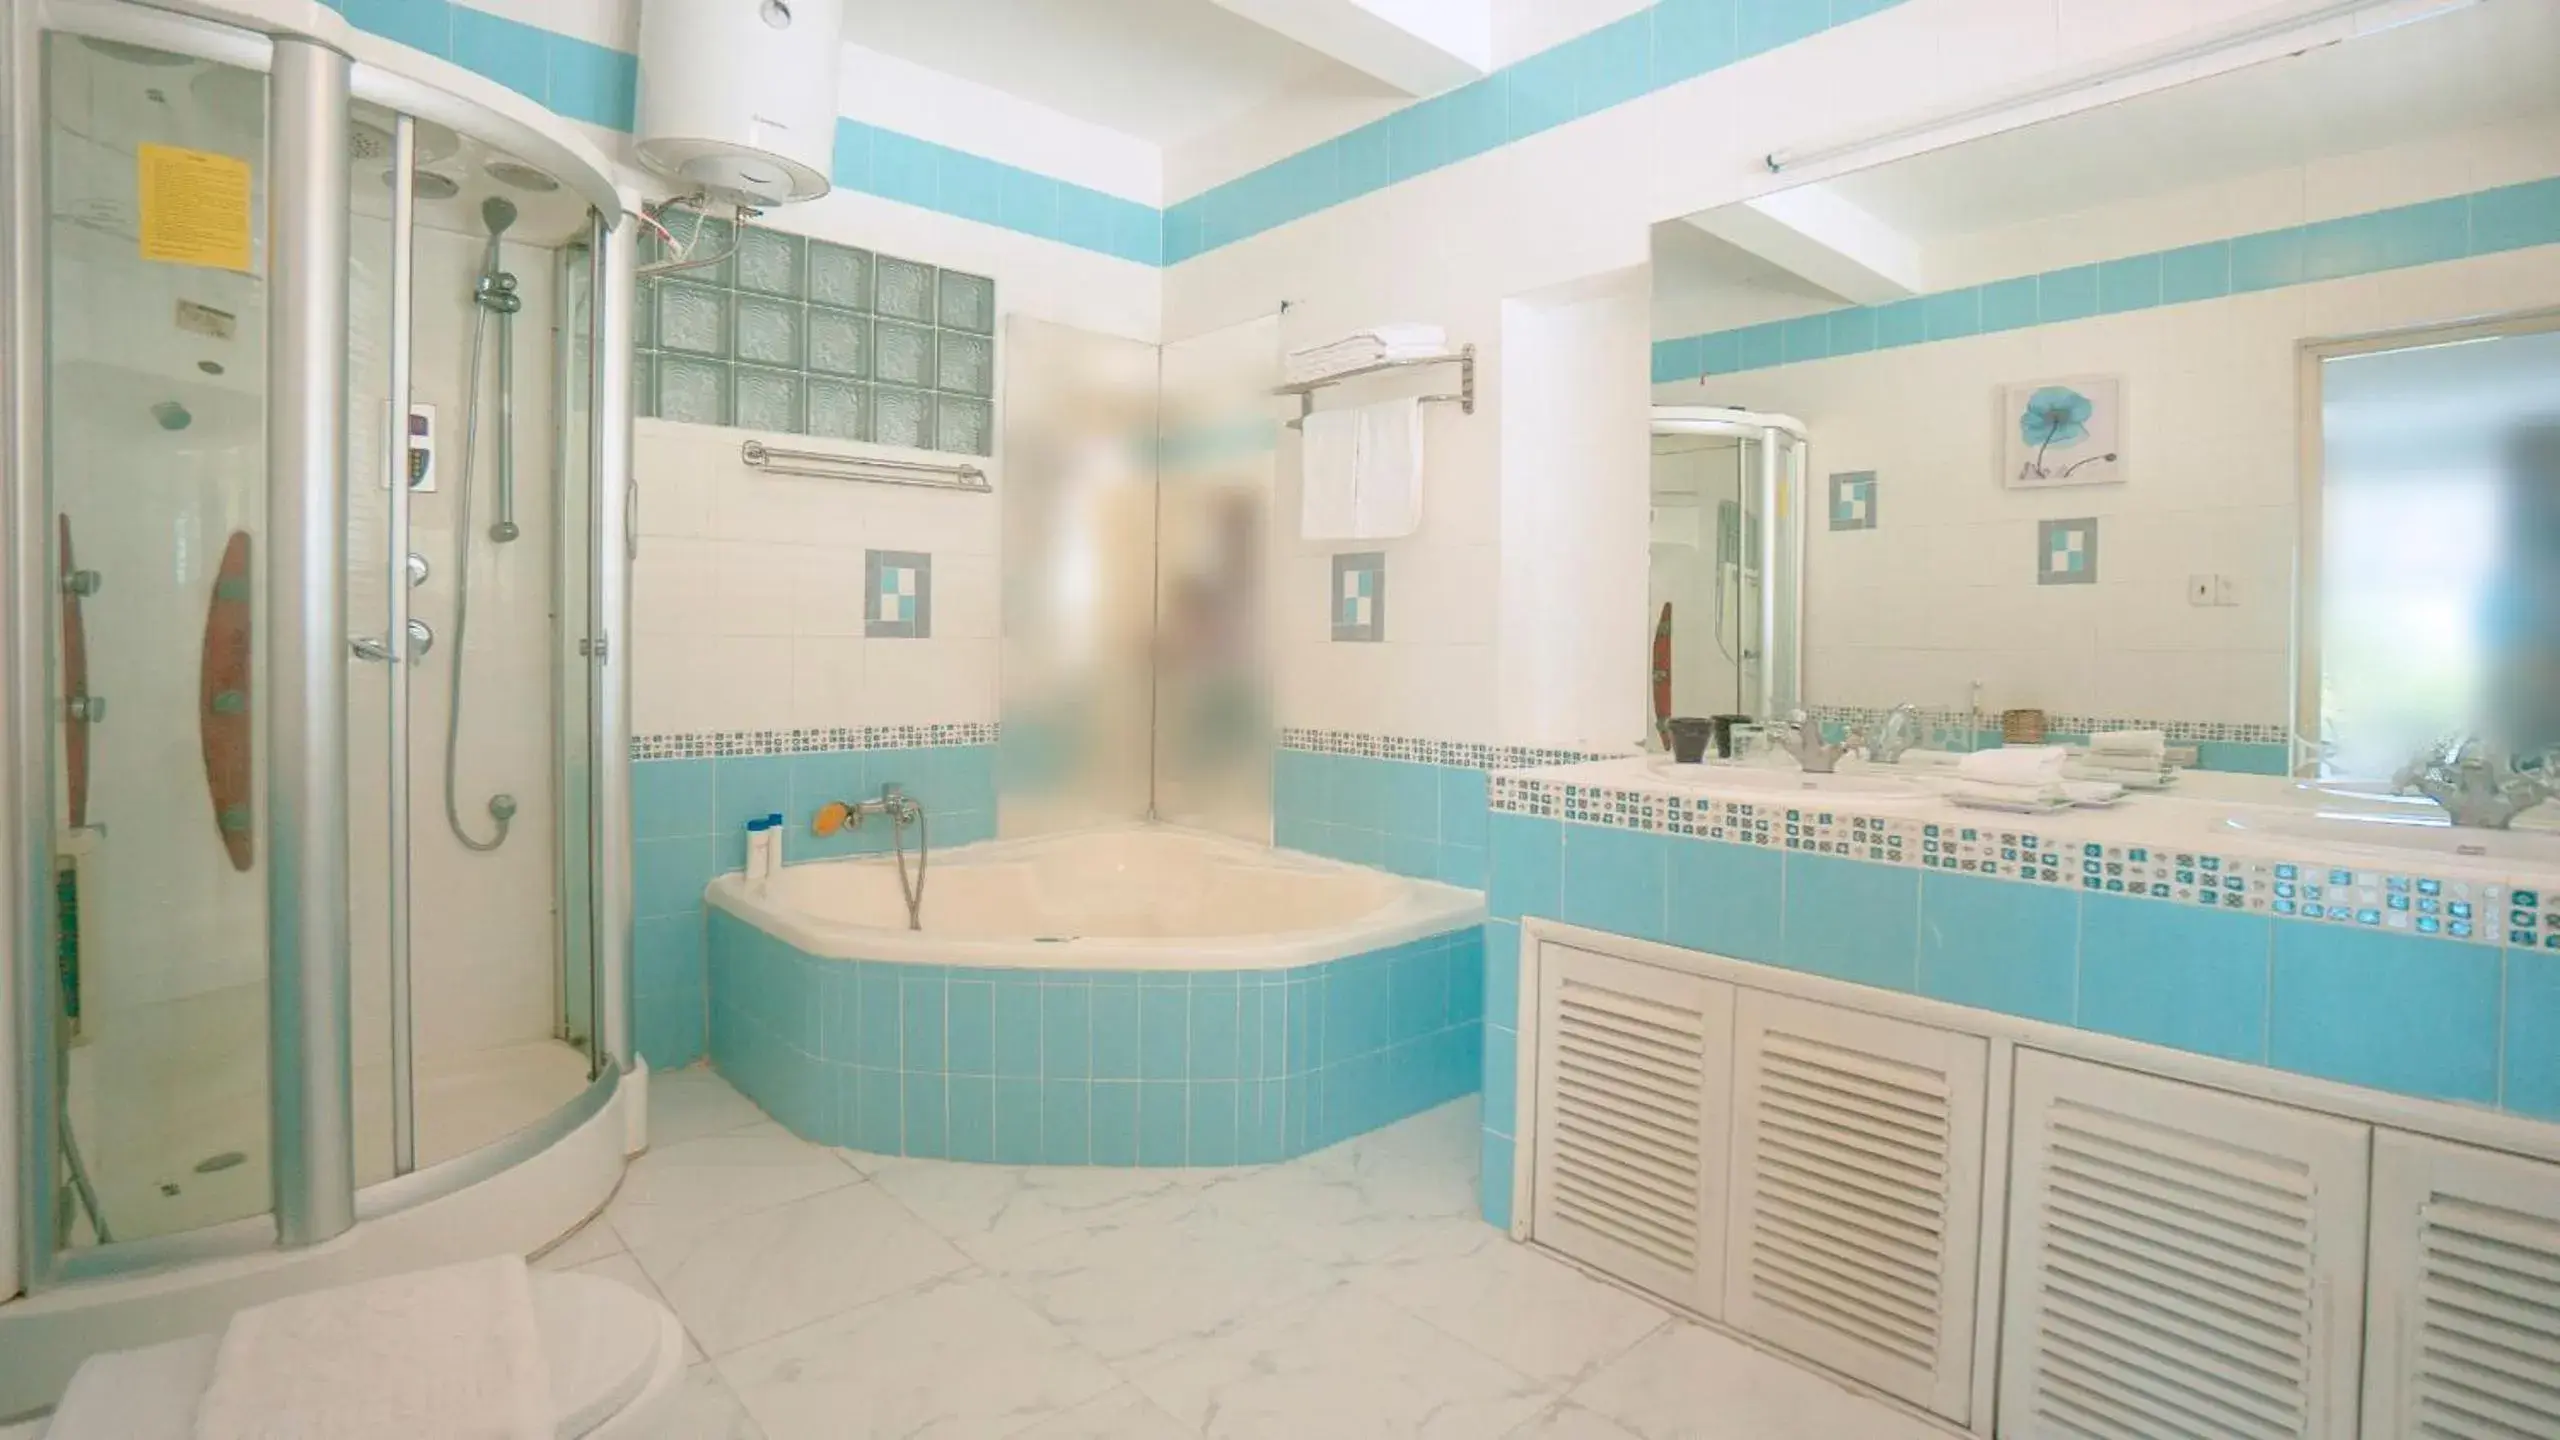 Bathroom in An Hoa Residence